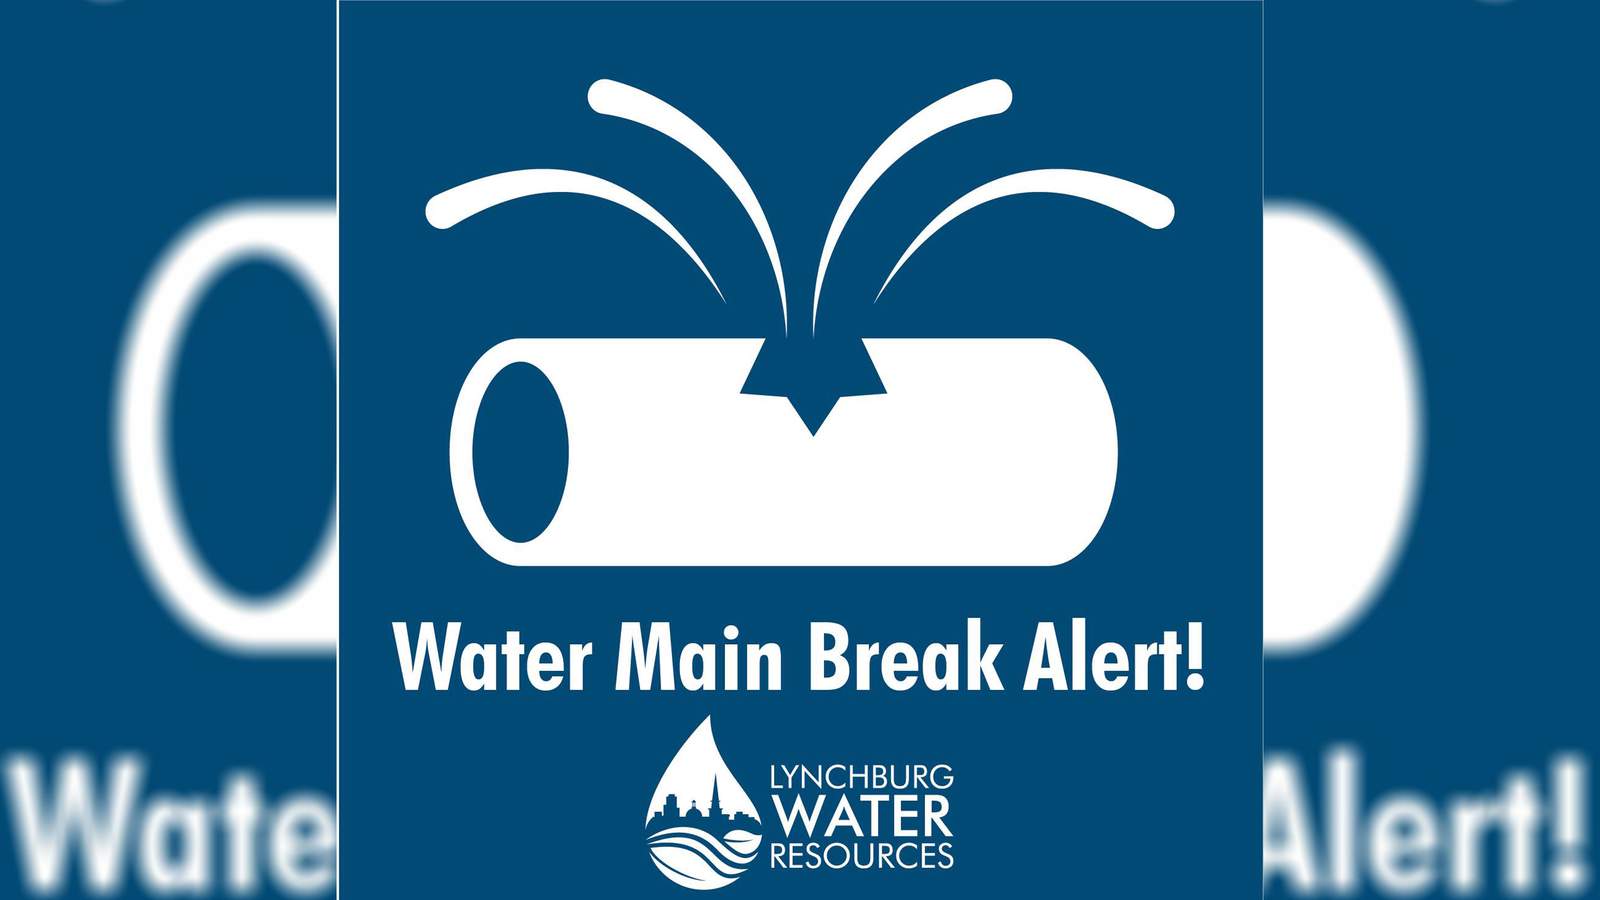 Water main break detours traffic in Lynchburg